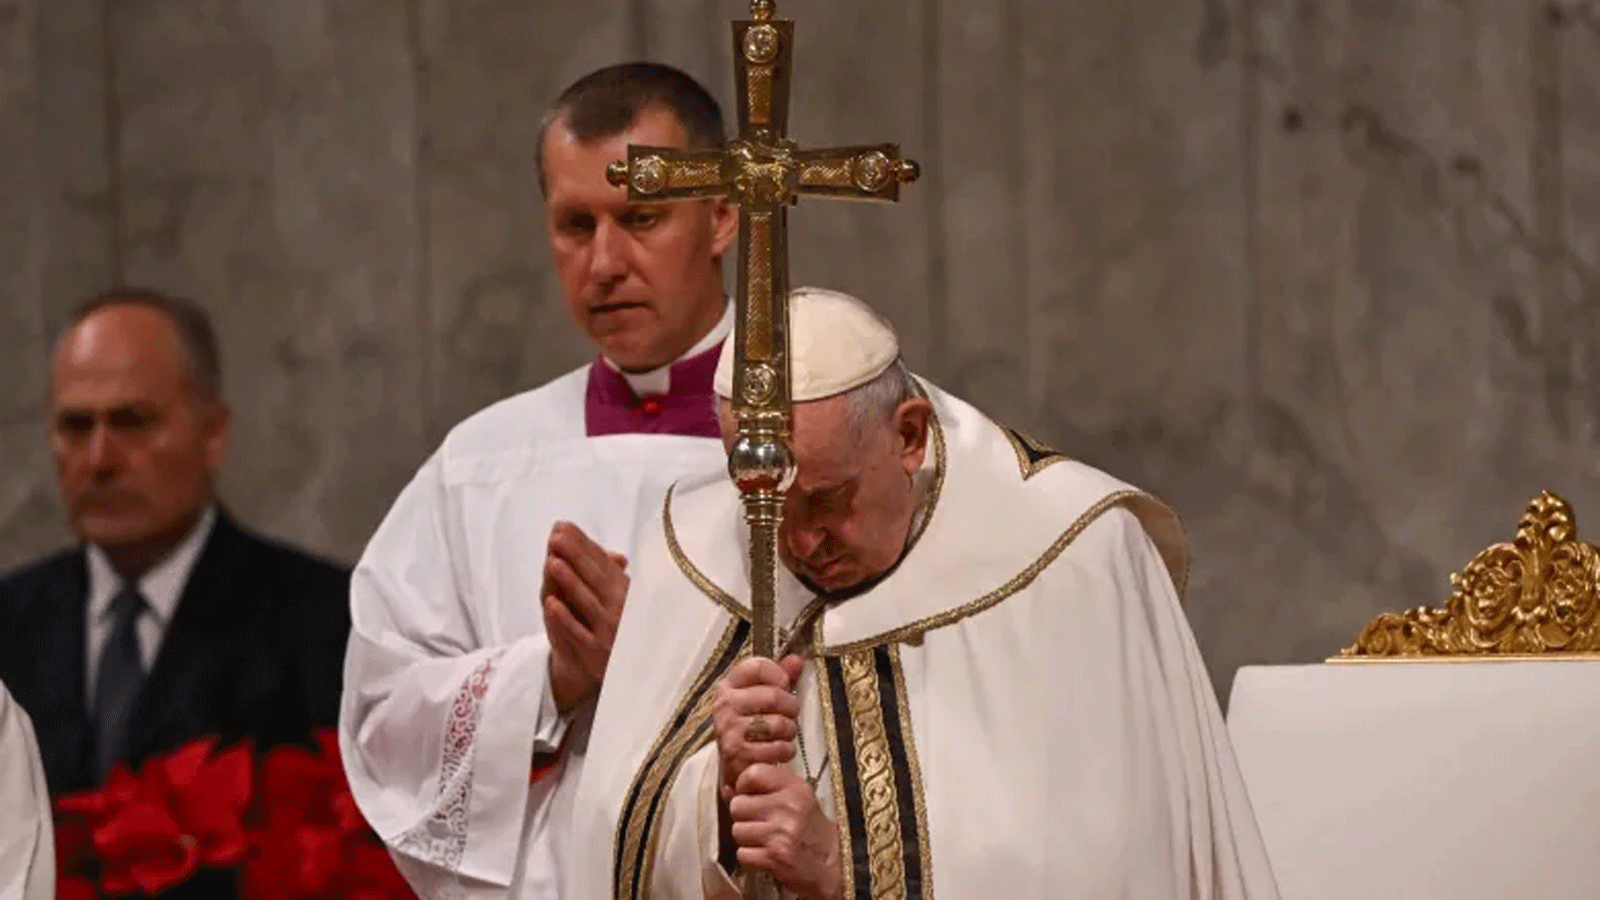 البابا فرانسيس يحني رأسه خلال قداس عشية عيد الميلاد في كاتدرائية القديس بطرس بالفاتيكان في روما ليلة السبت 24 ديسمبر\ كانون الأول 2022